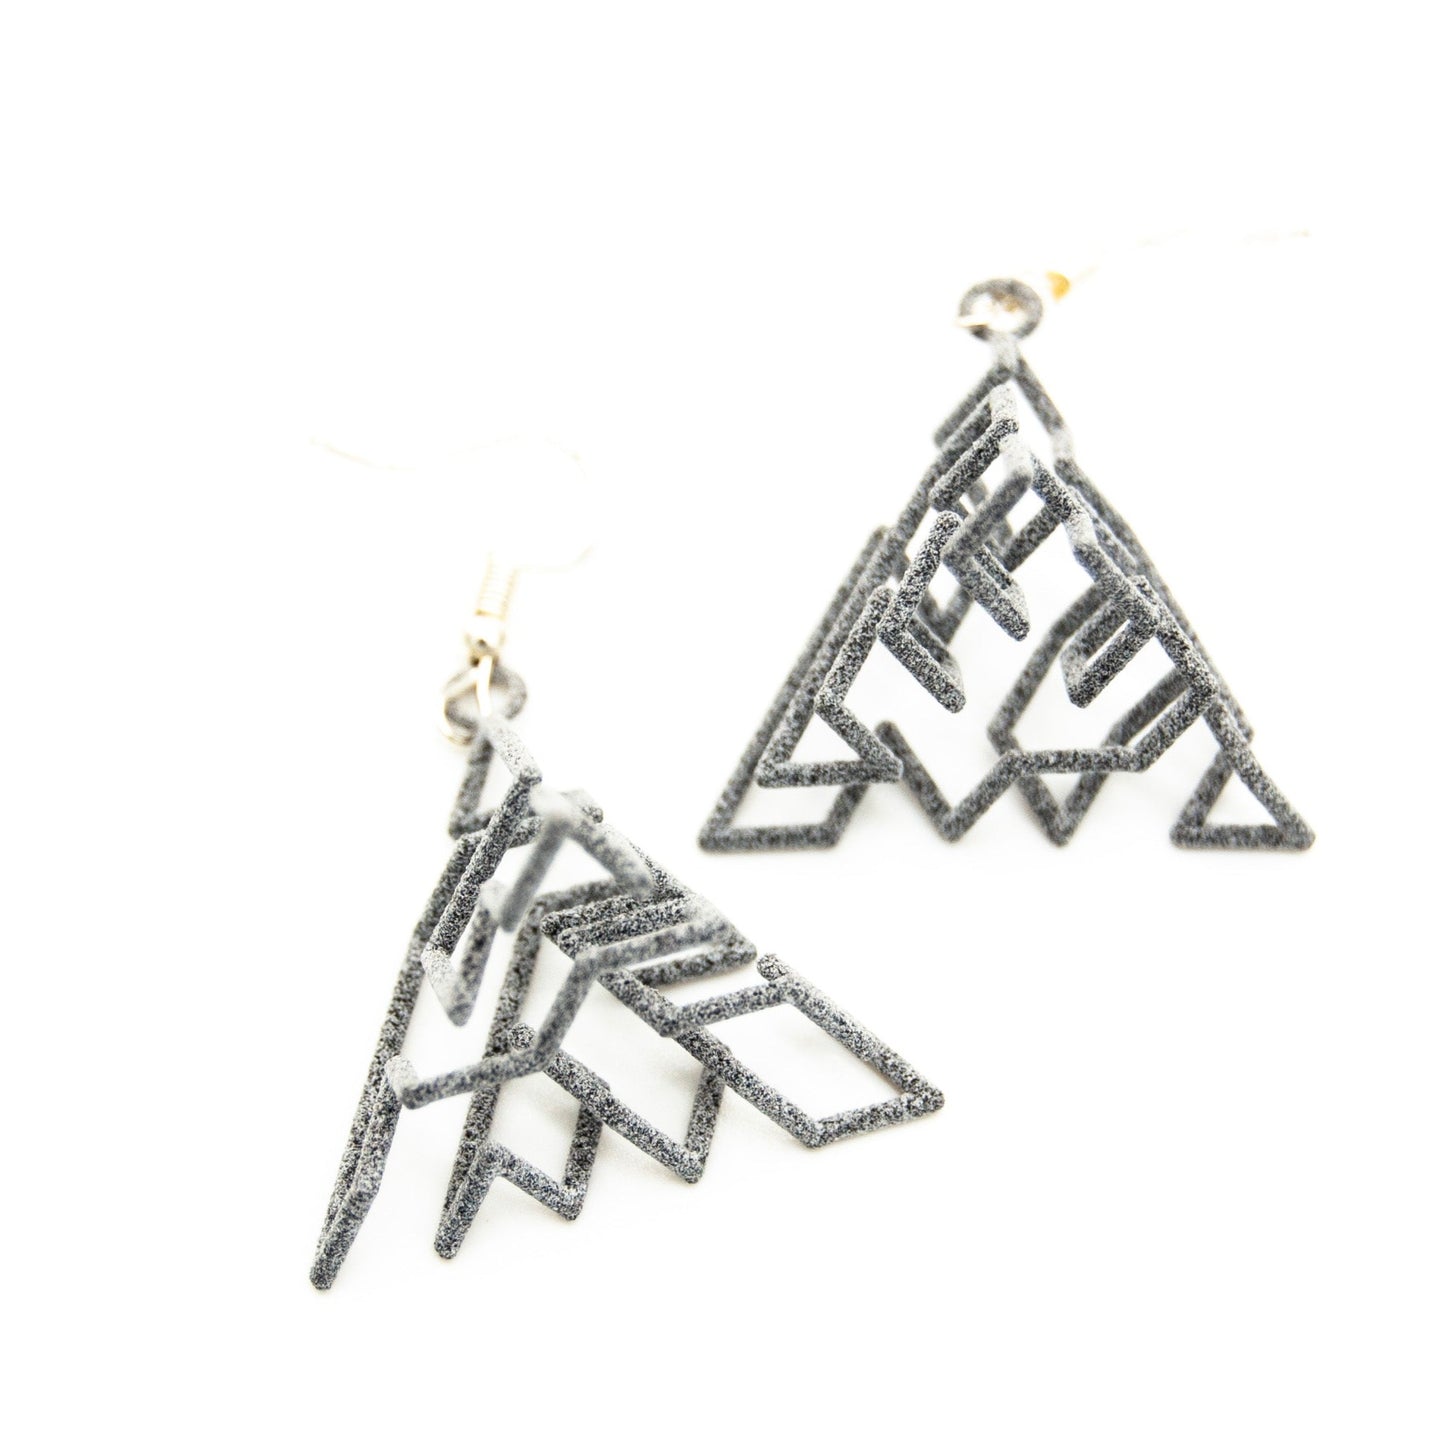 Tetrahedral Earrings